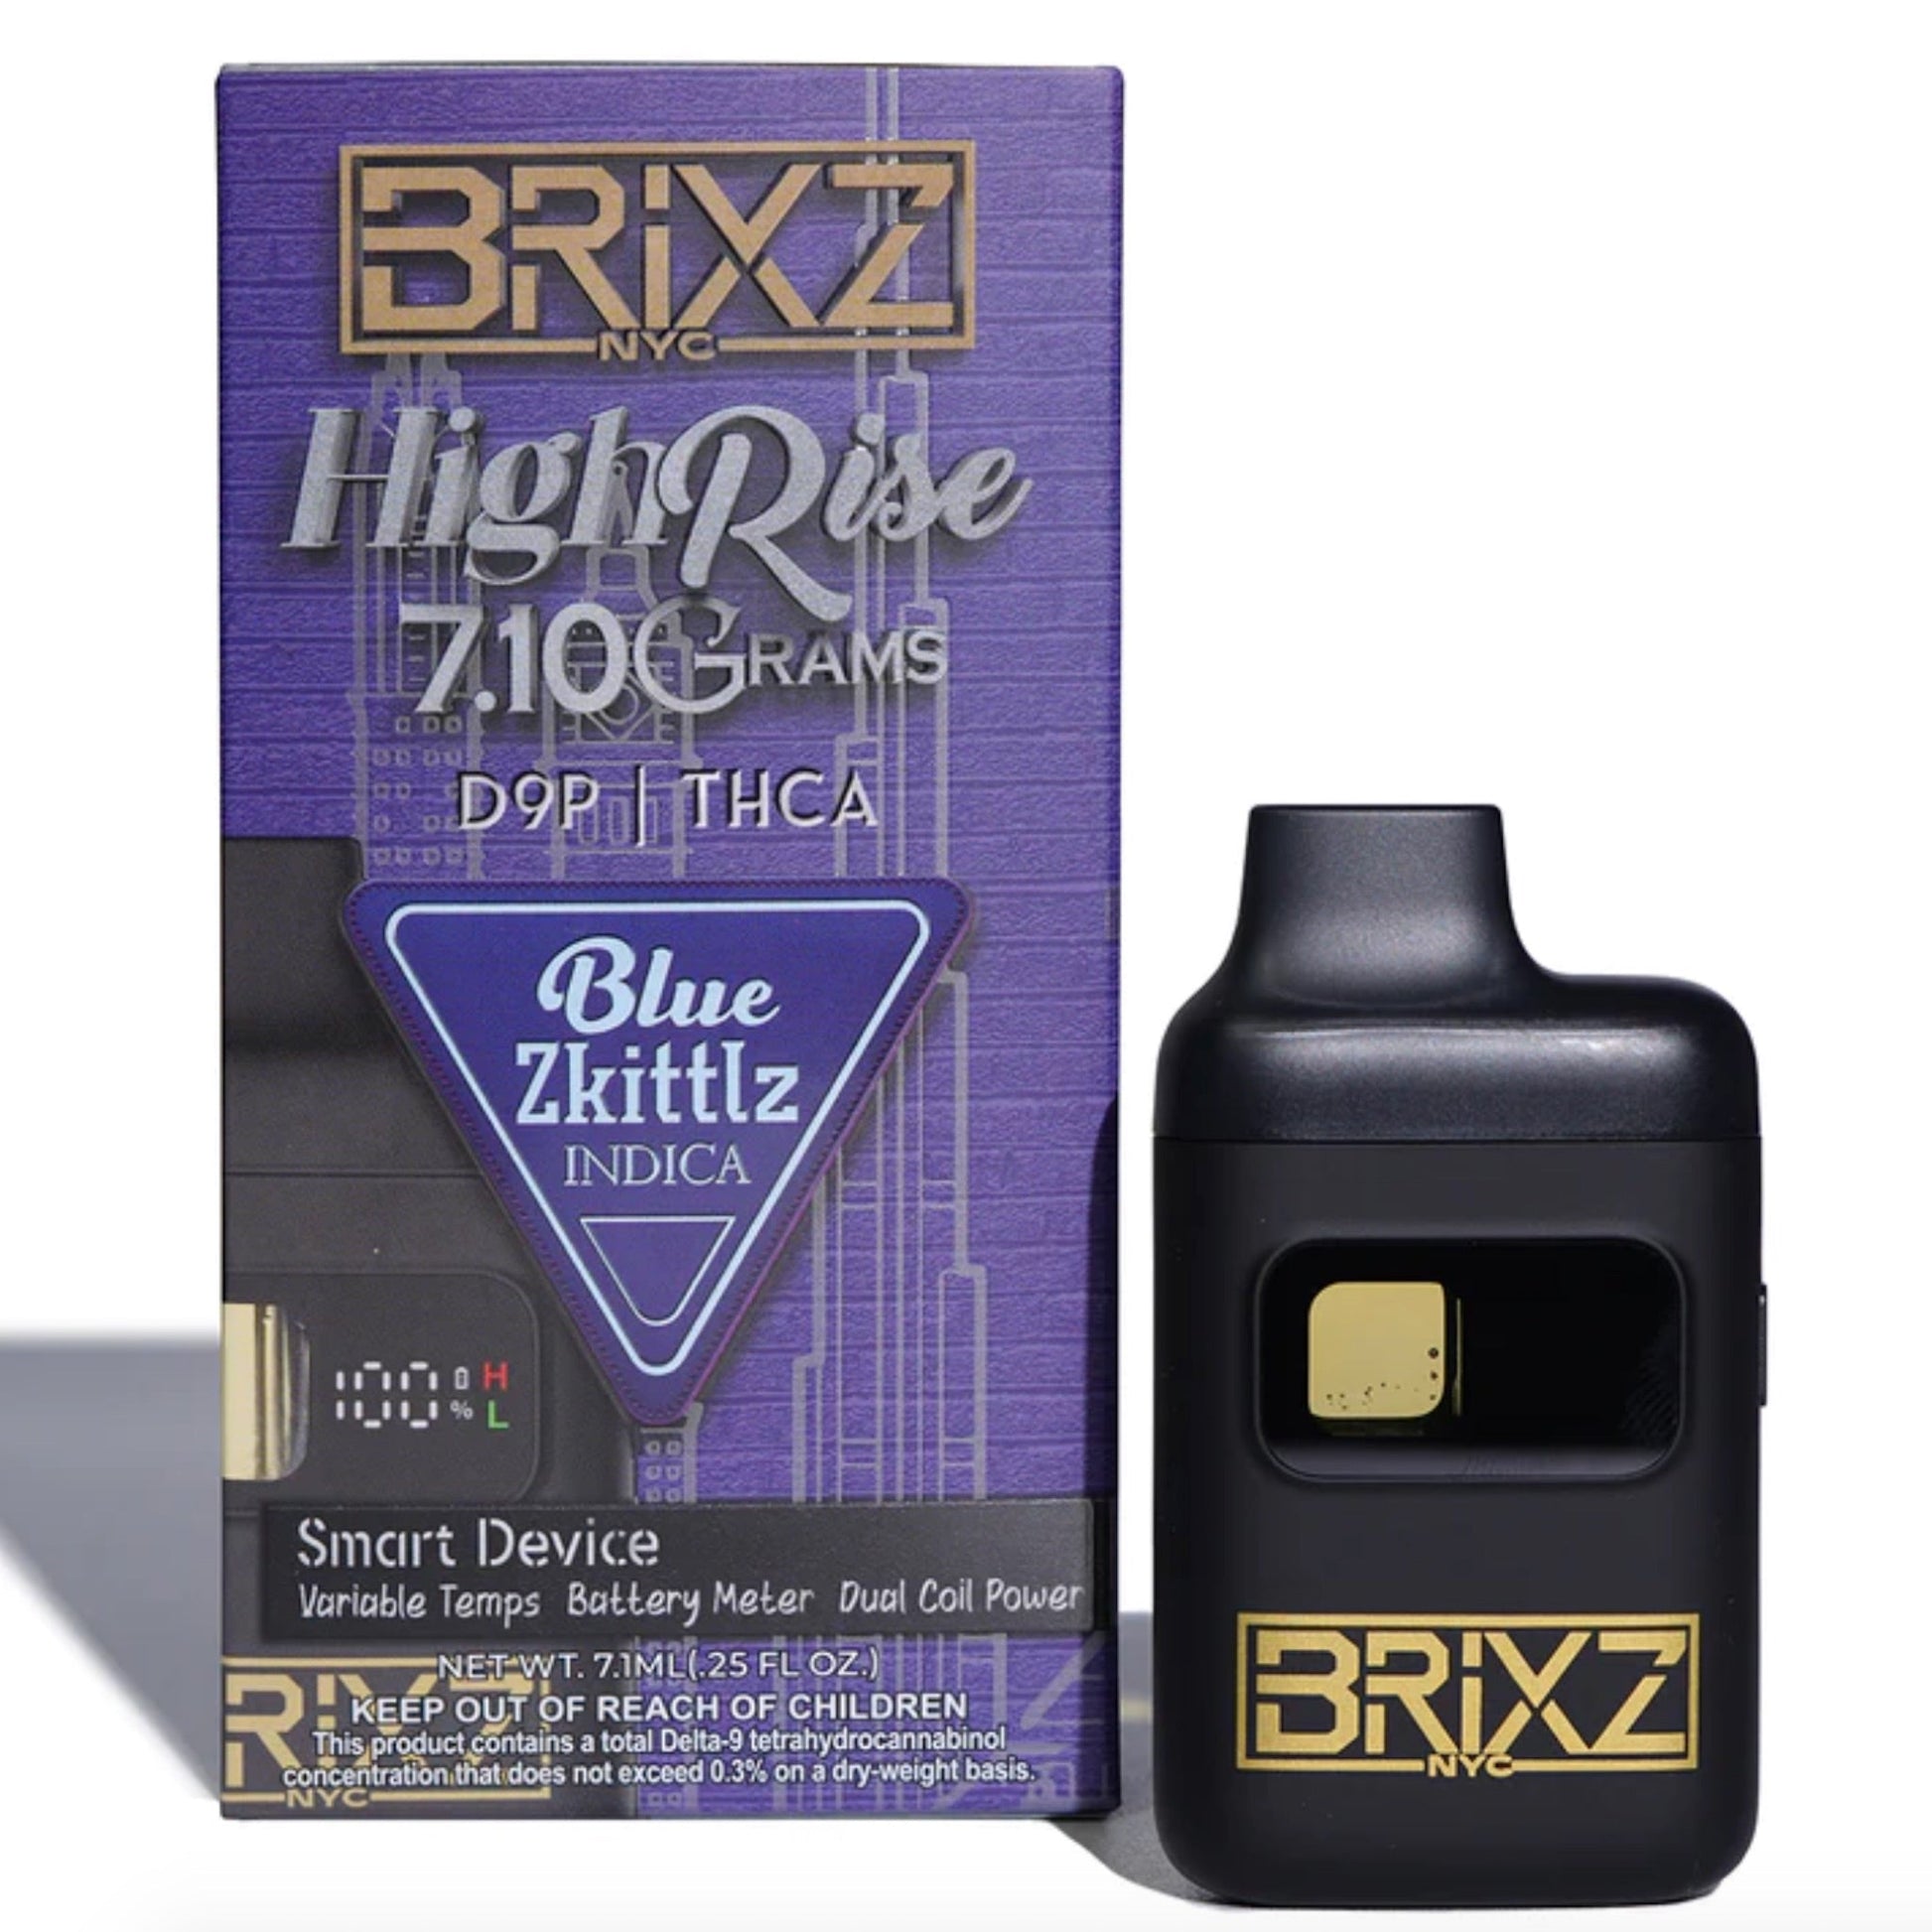 Dazed Brixs Highrise THC-A Vaporizer - 7.1g